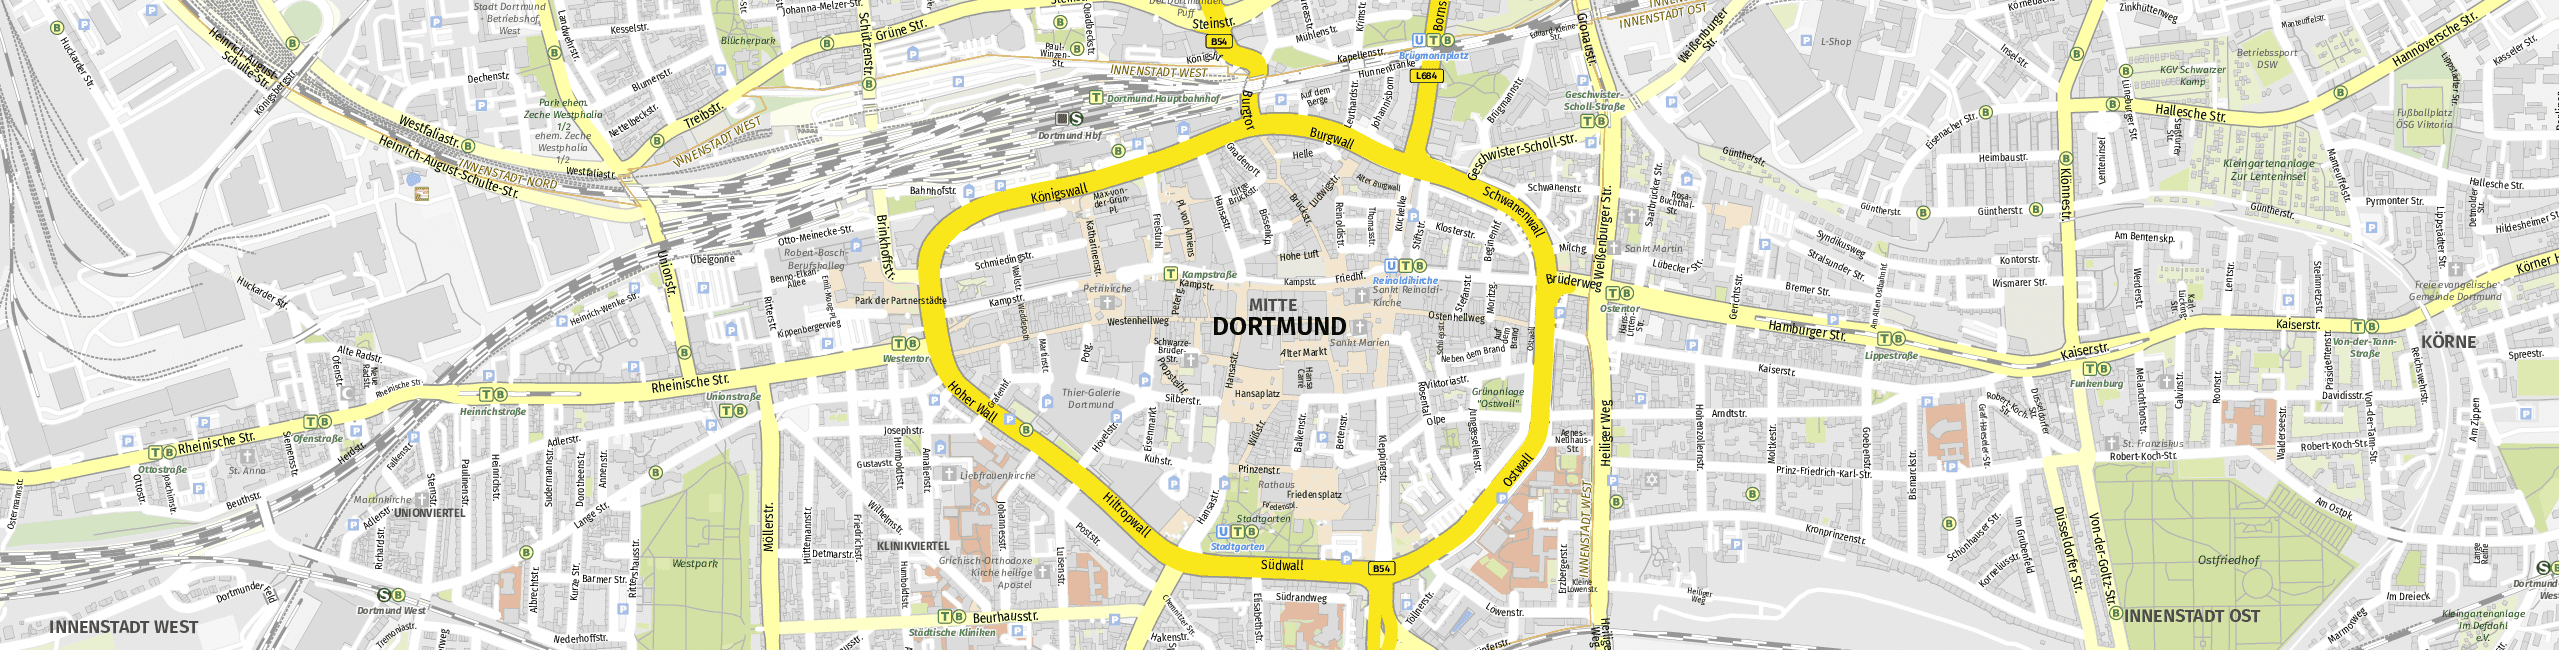 Stadtplan Dortmund zum Downloaden.